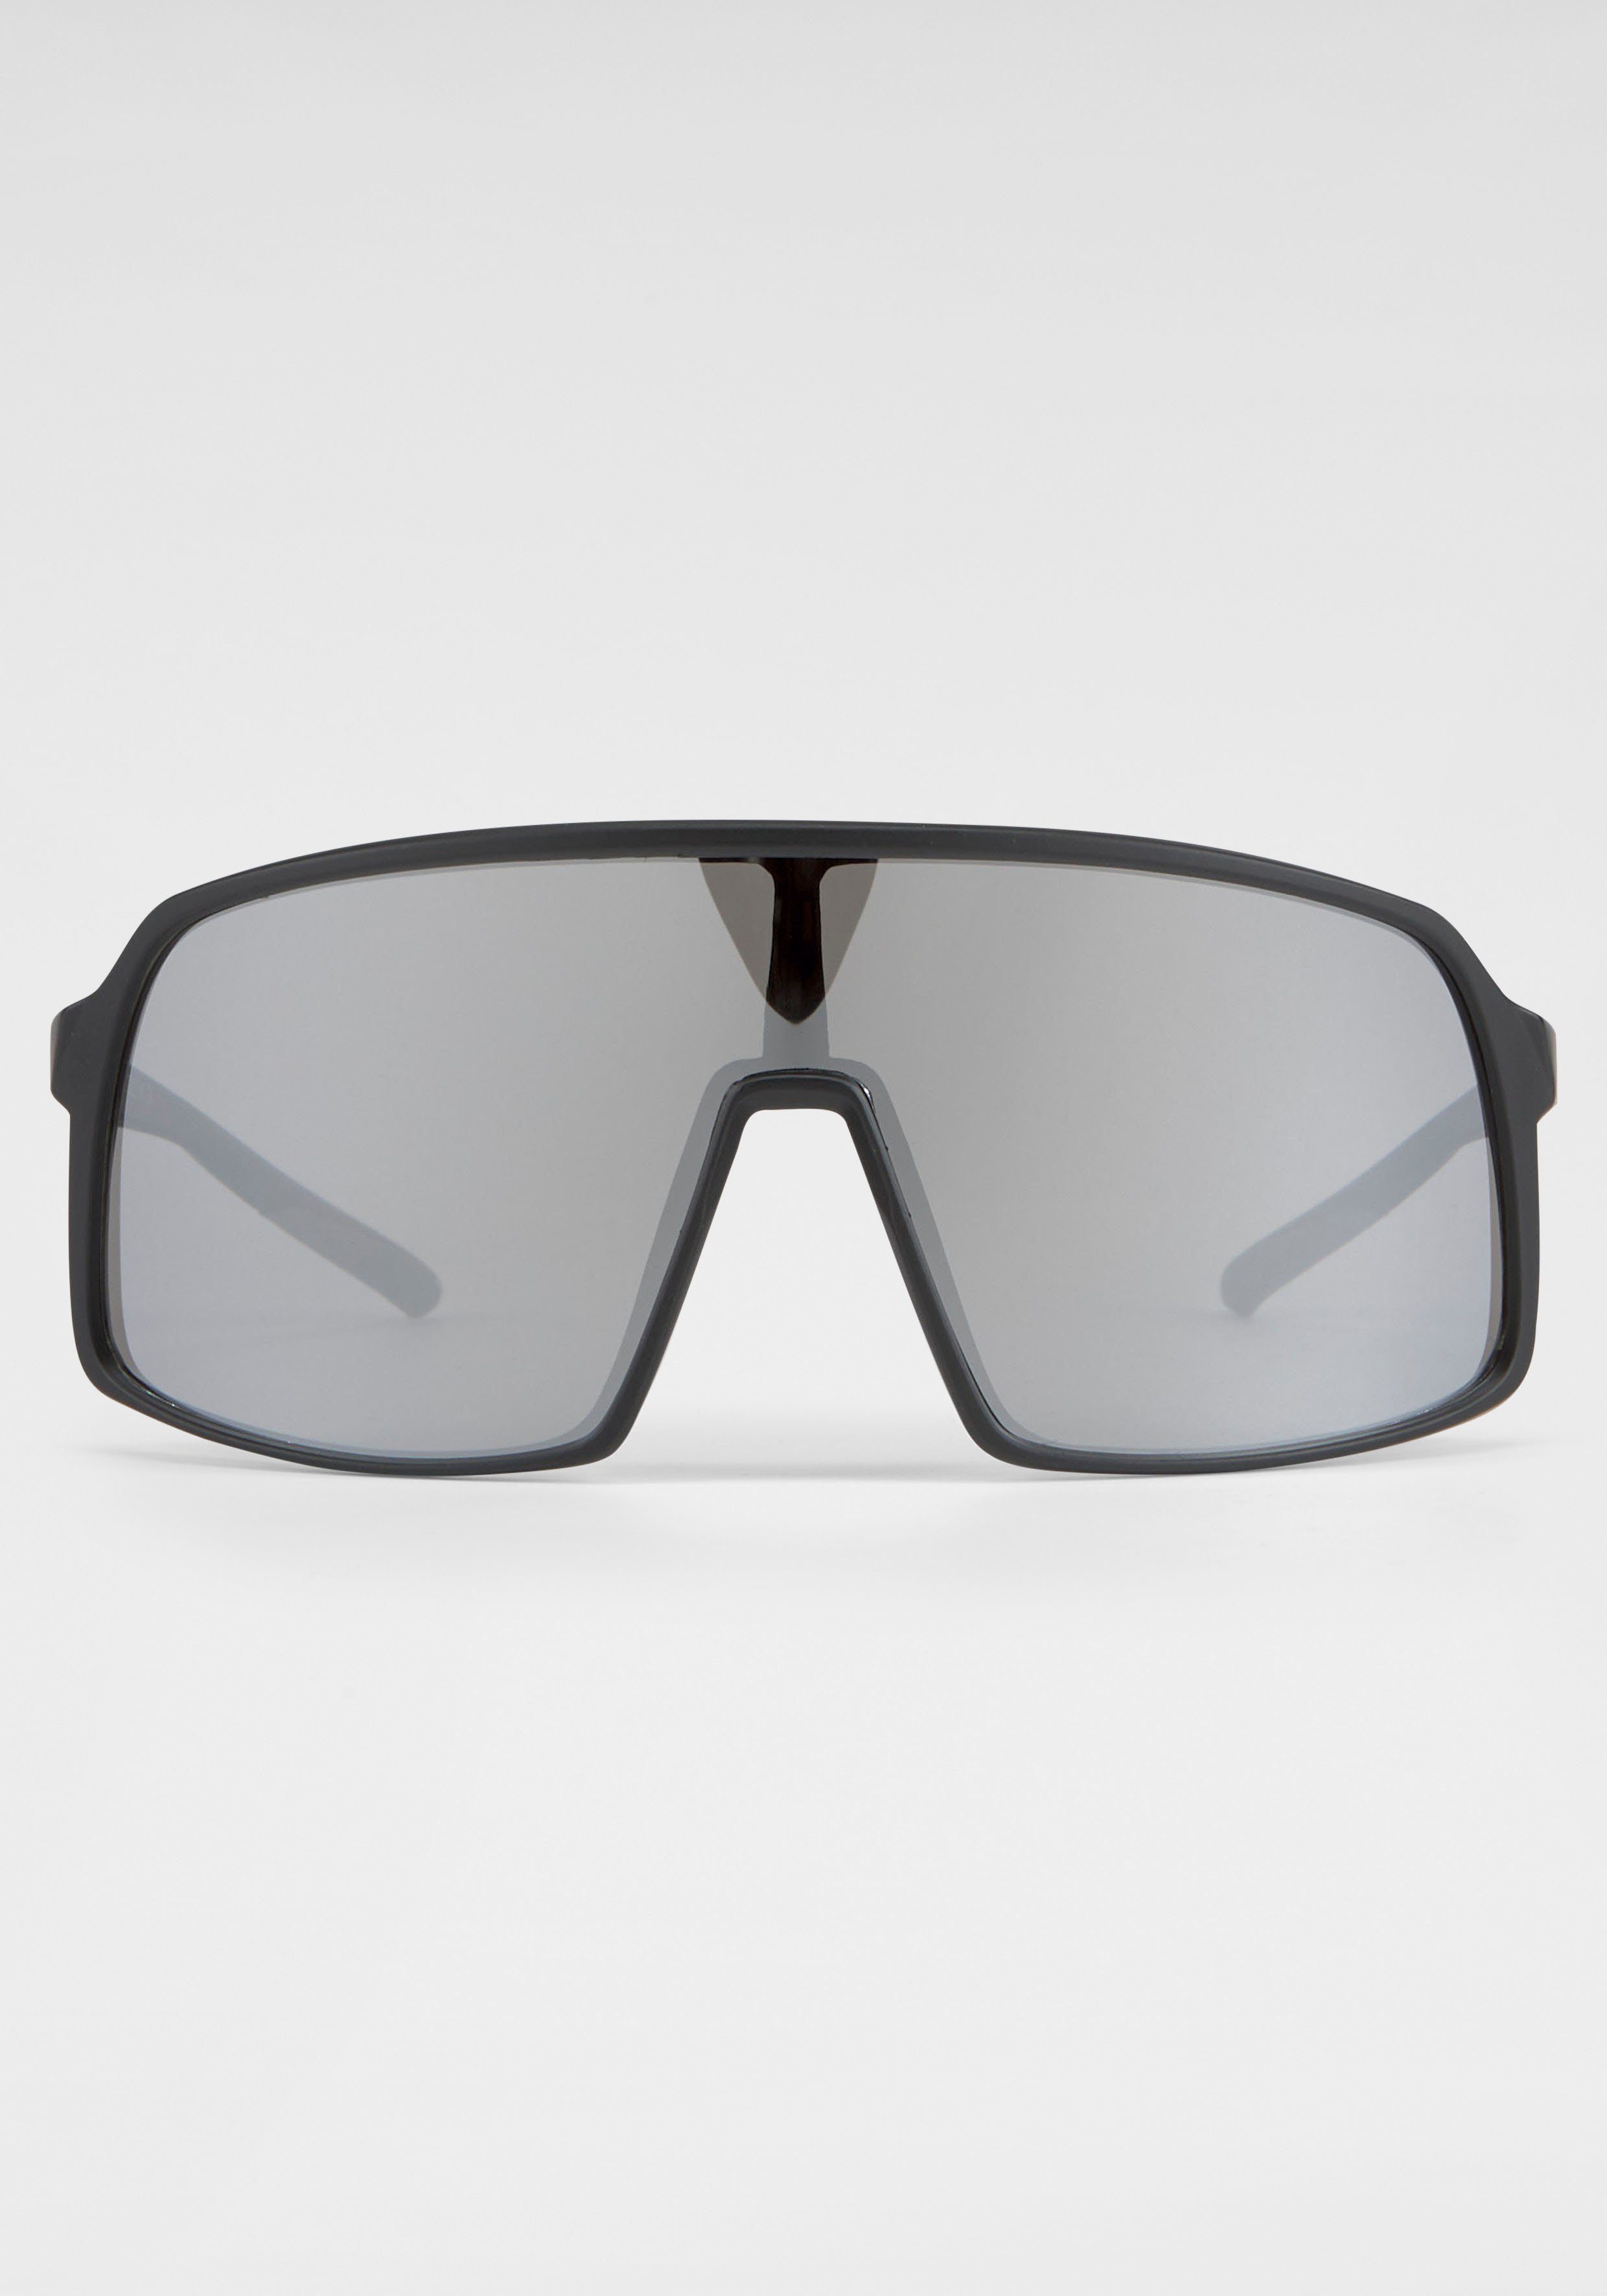 Eyewear große BLACK Gläser BACK IN Sonnenbrille schwarz-silber